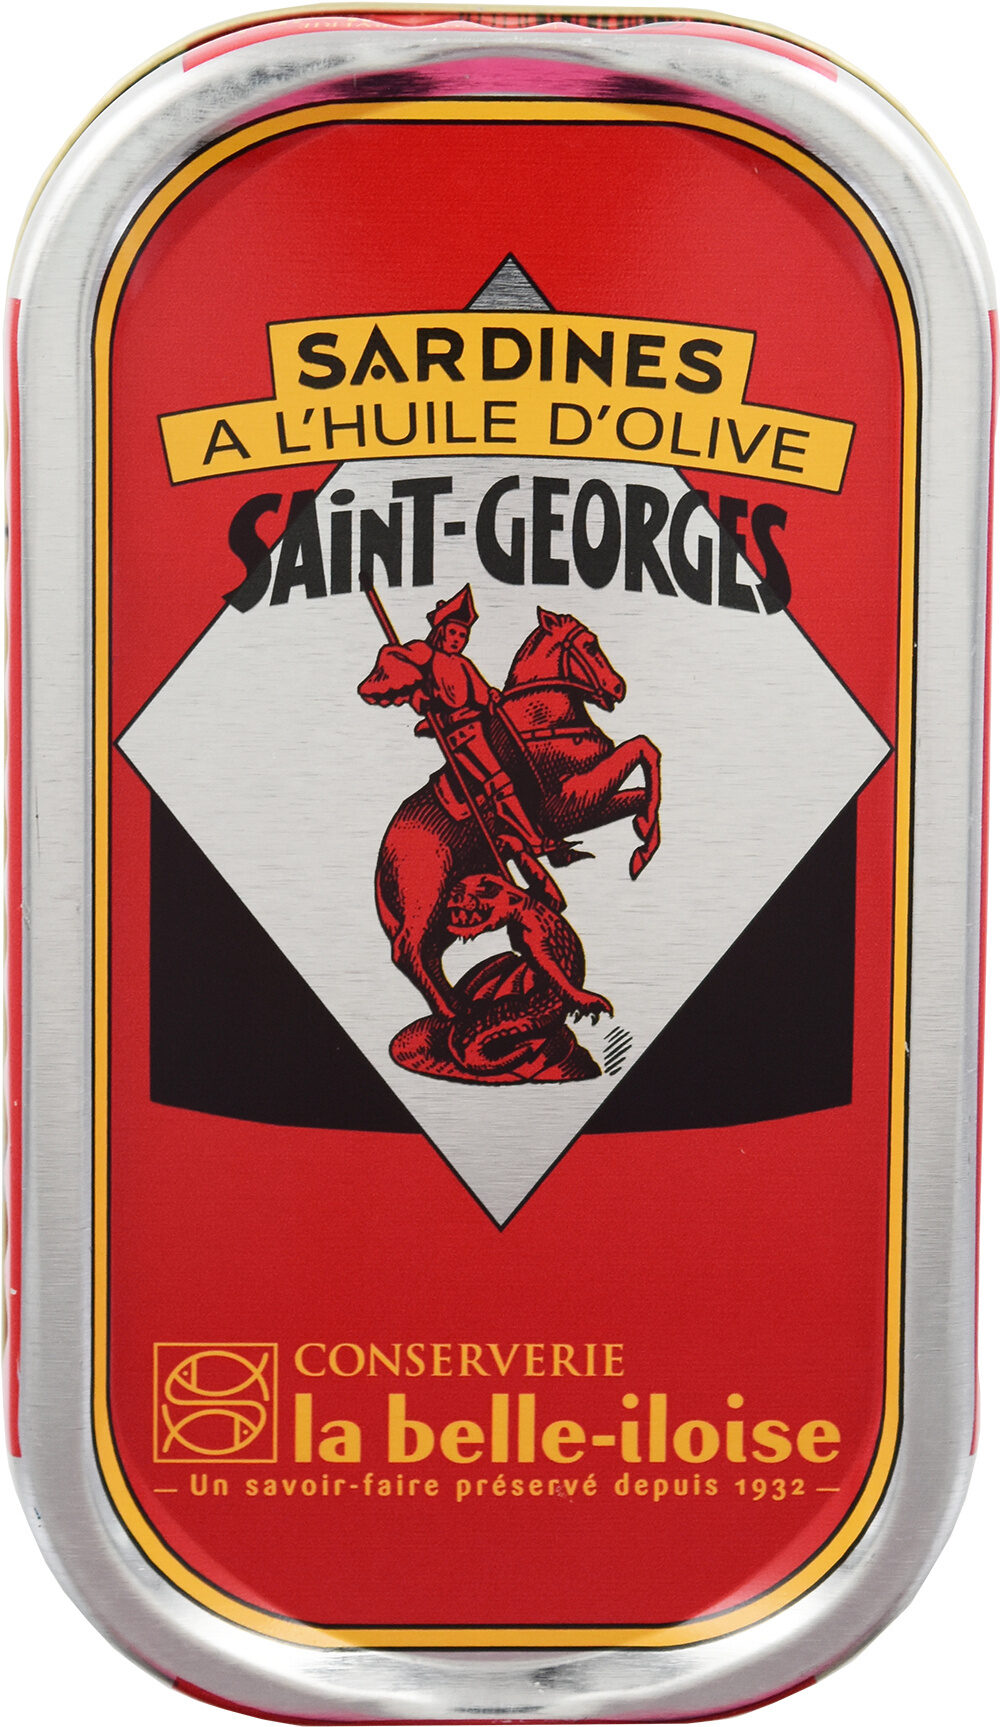 Sardine saint georges - Product - fr